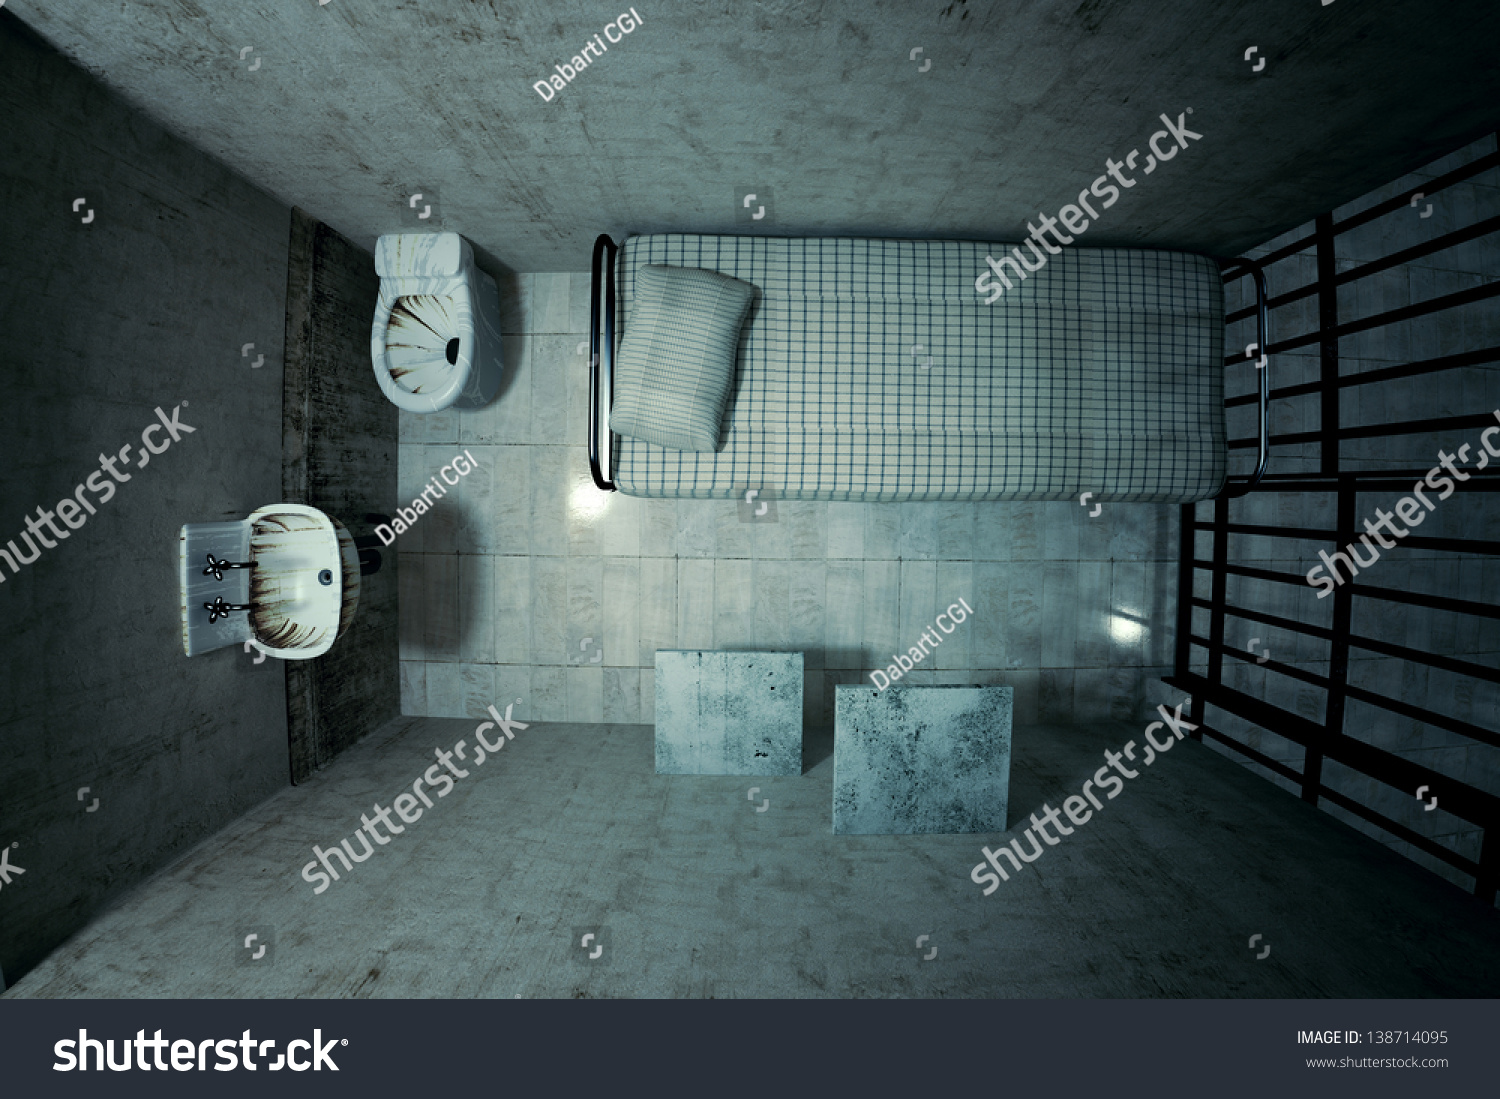 ベッド シンク トイレ 椅子を持つ1人用の ロックされた古い刑務所の監房の上面図 暗い雰囲気 のイラスト素材